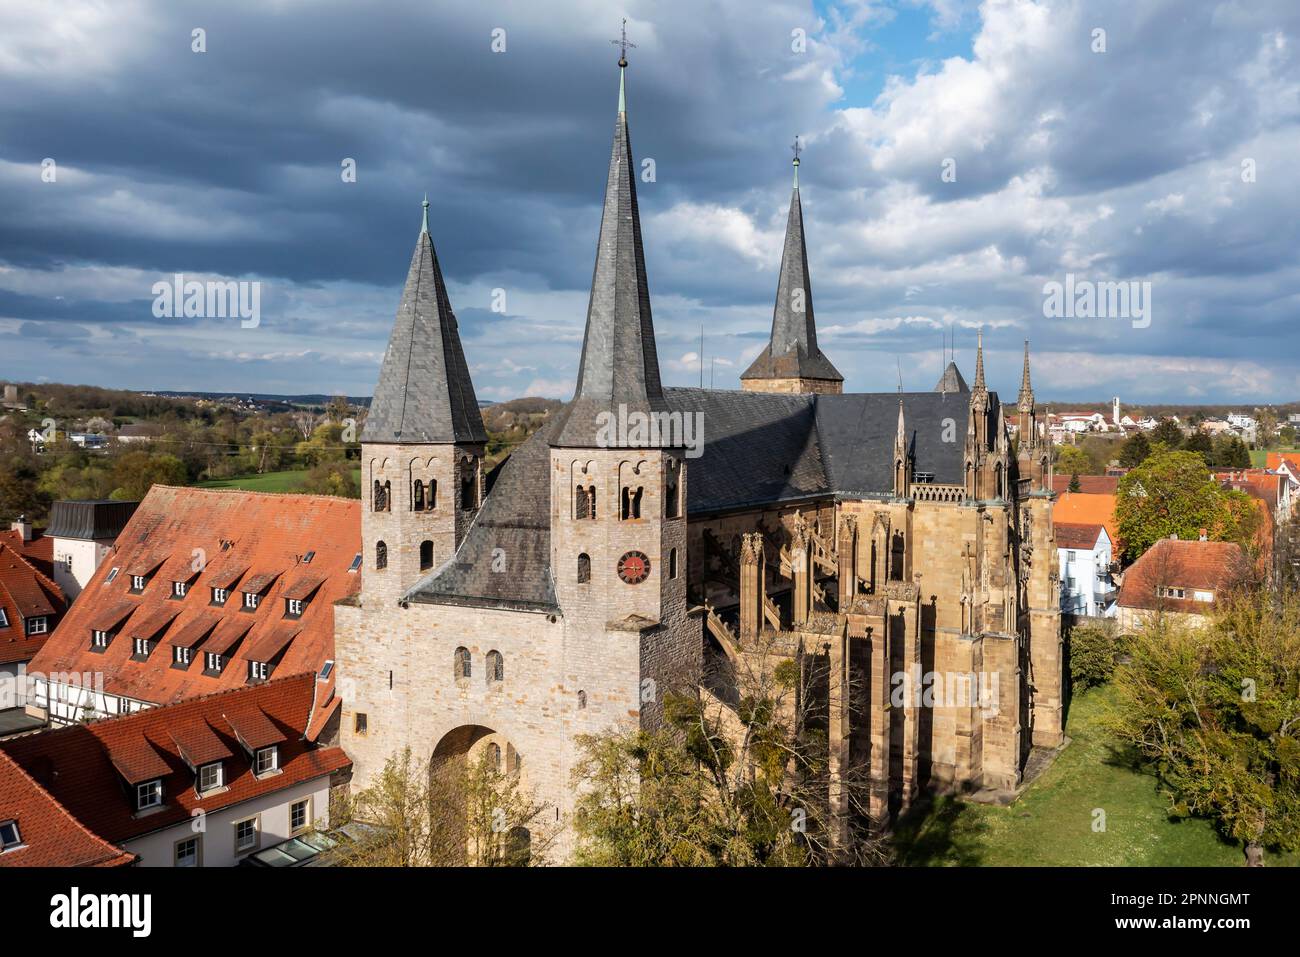 St. Peter's Collegiate Church, l'un des plus importants bâtiments gothiques d'Allemagne, vue extérieure, photo de drone, Bad Wimpfen Banque D'Images